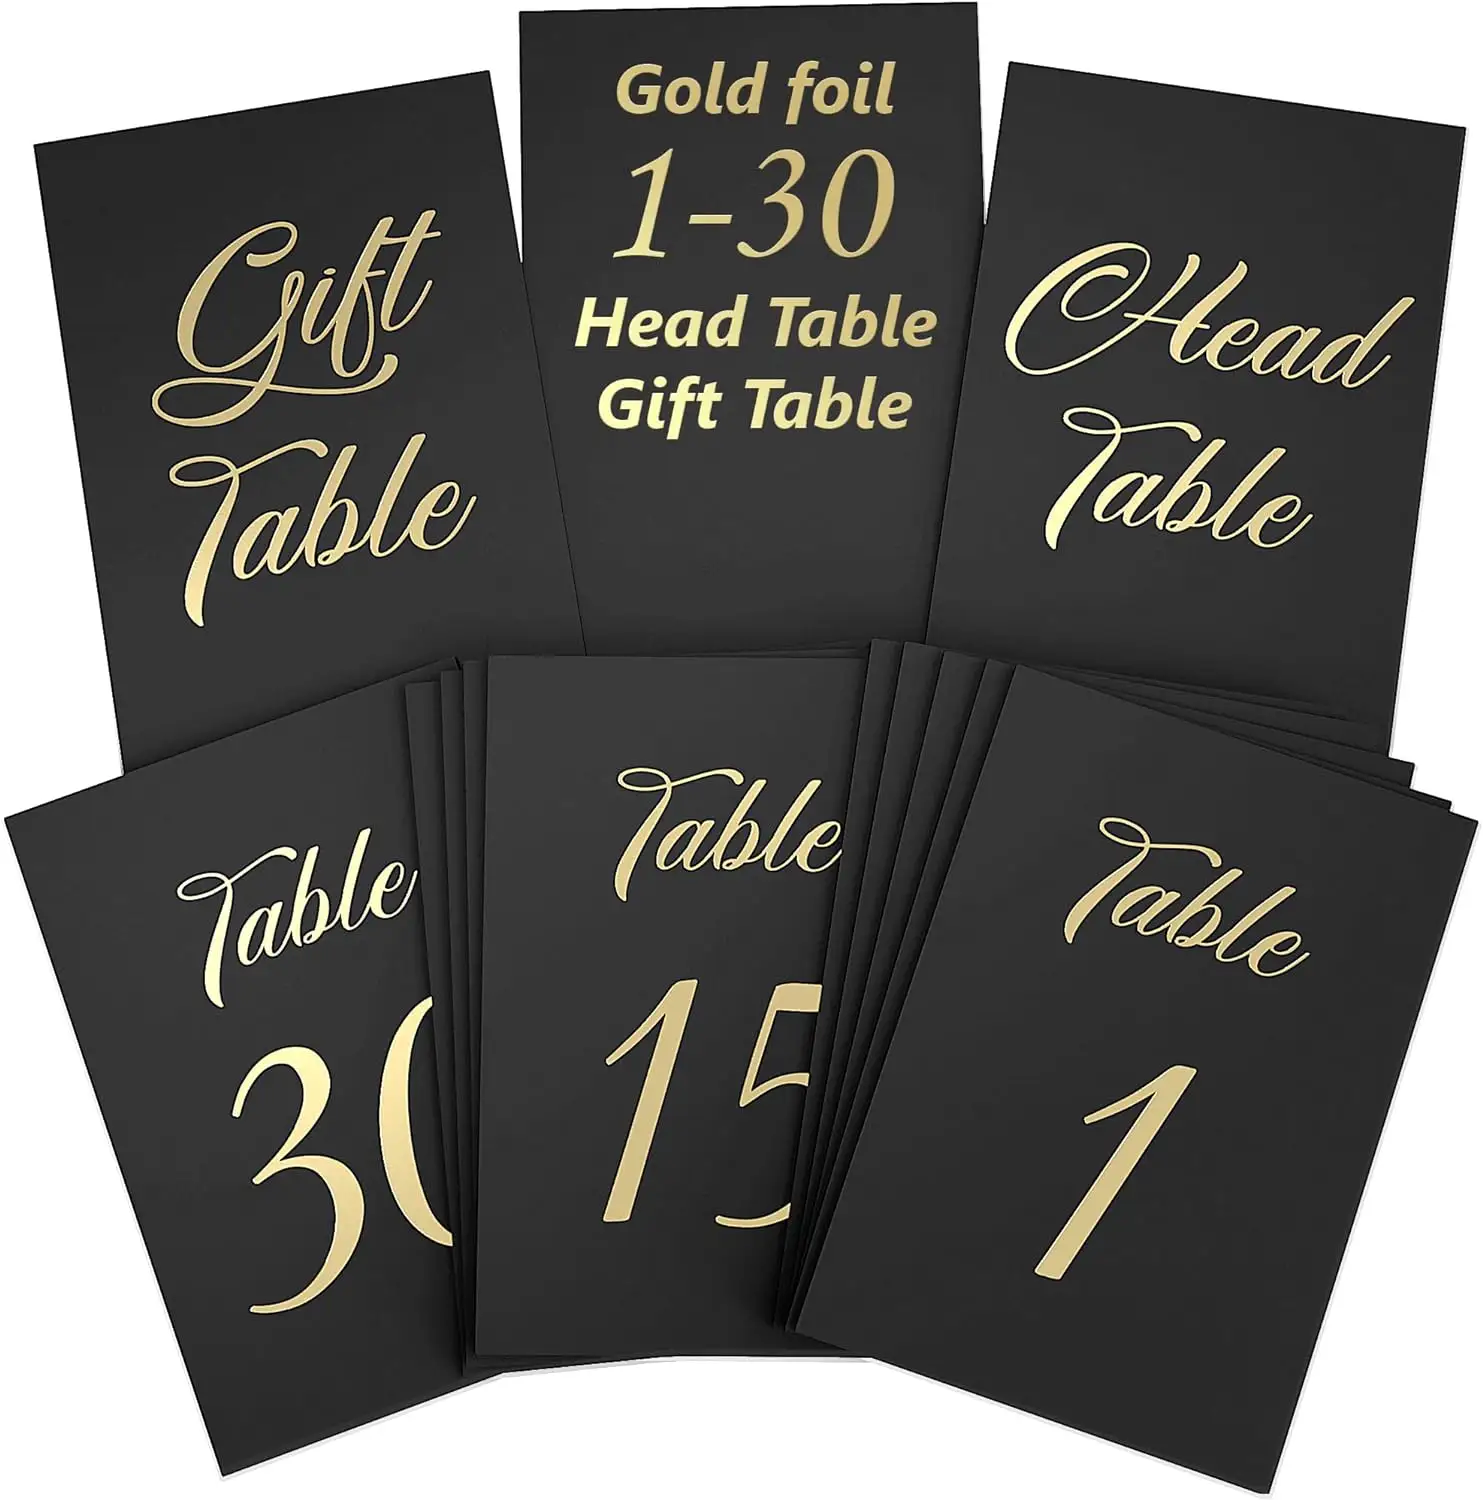 Tabela preta personalizada números 1-30 Festival Holiday Wedding Reception Table Gift Card com folha de ouro